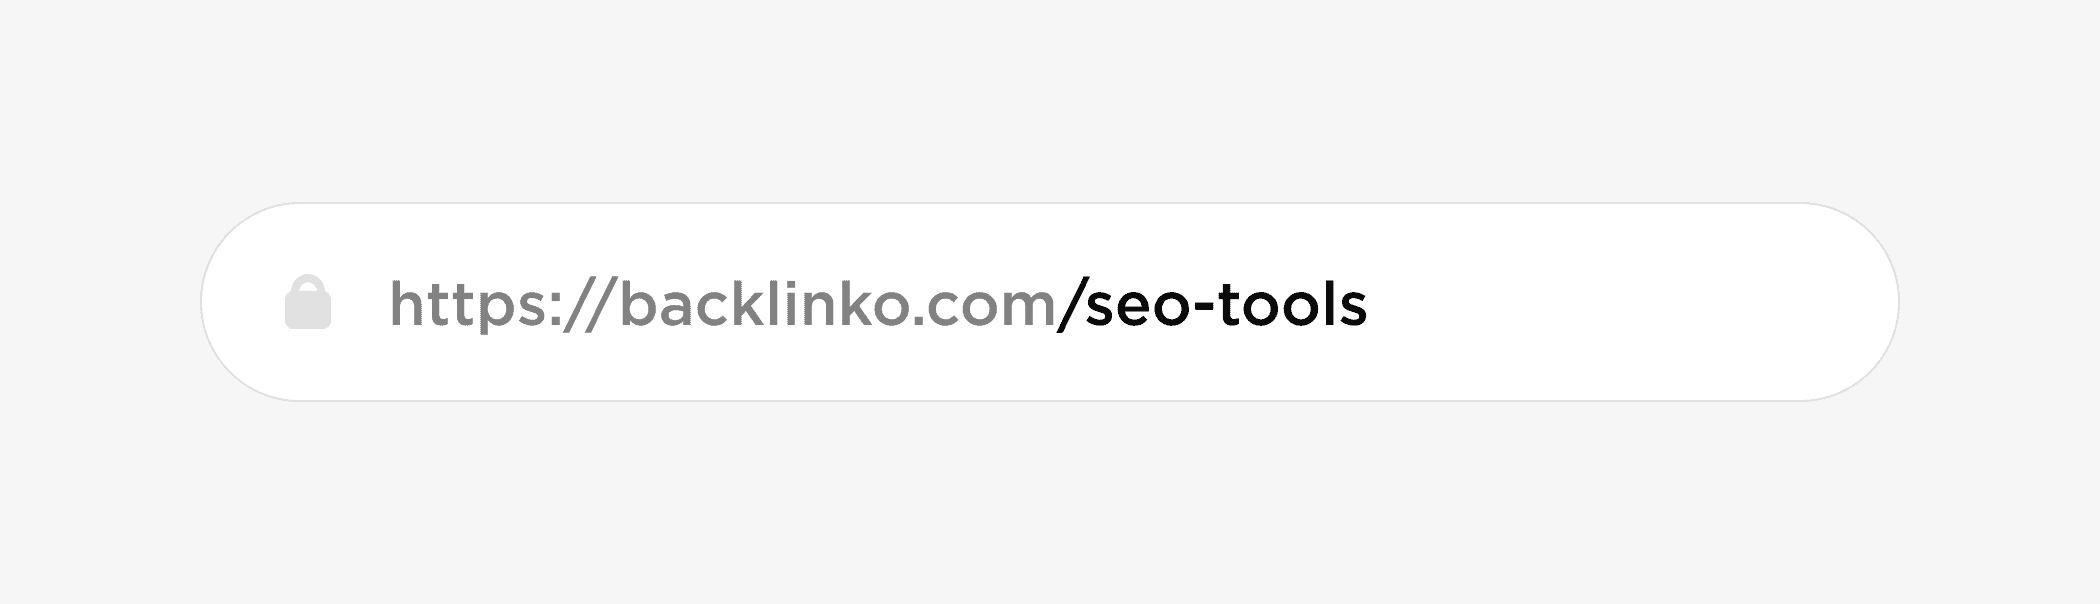 SEO Tools URL